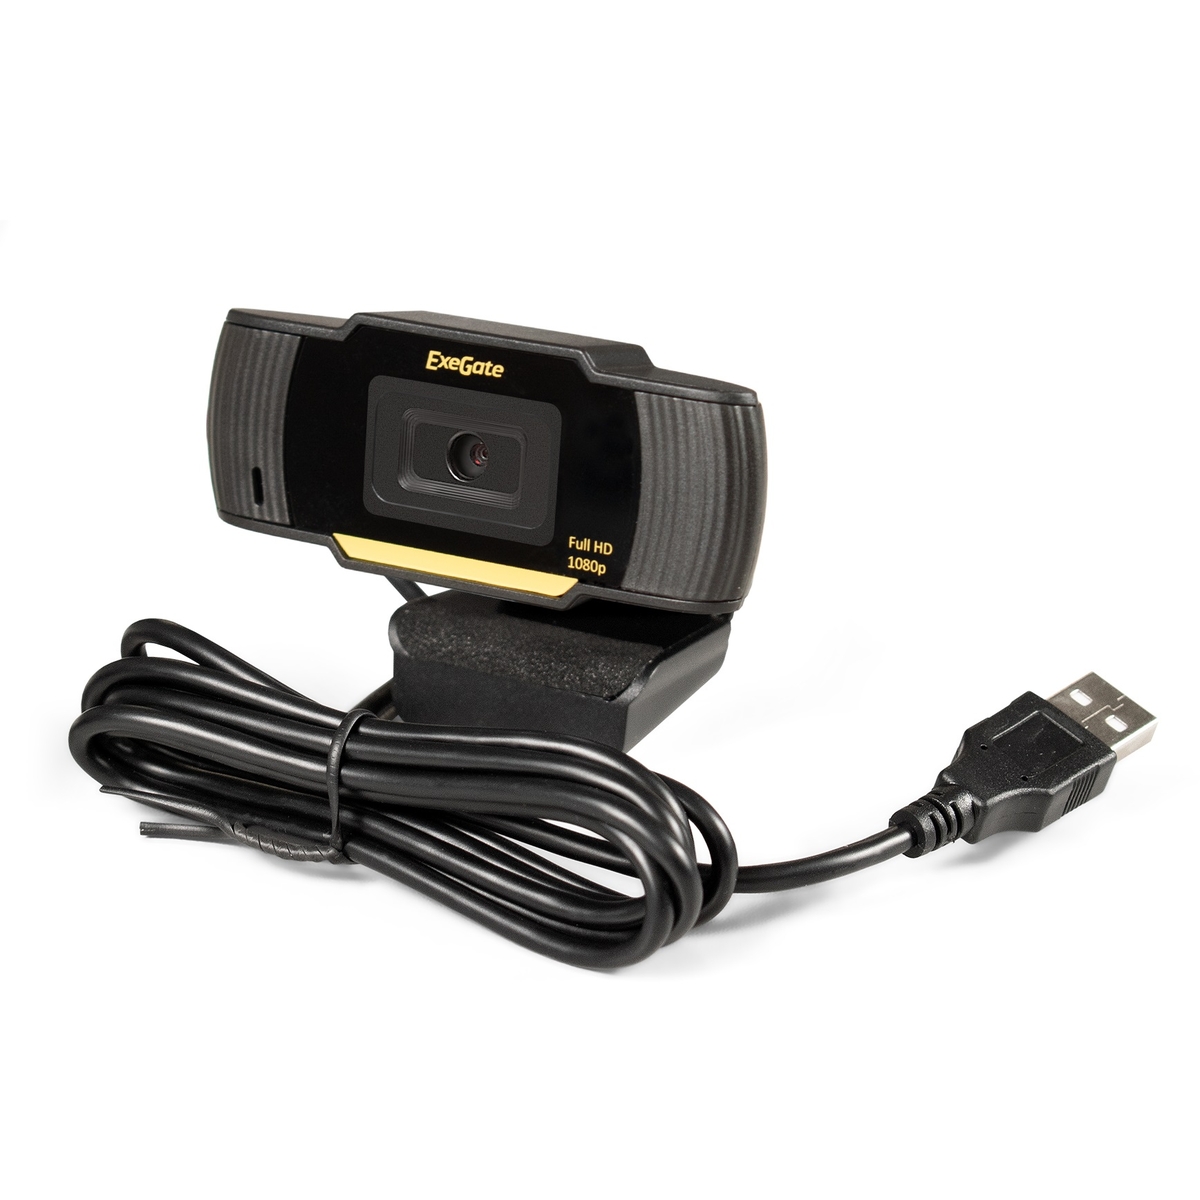 Веб-камера ExeGate GoldenEye C920 FullHD (EX286182RUS) веб камера 60fps 1080p автофокус потоковое hd веб камера emeet c970 со штативом и микрофоном мини камера для ноутбука настольный пк